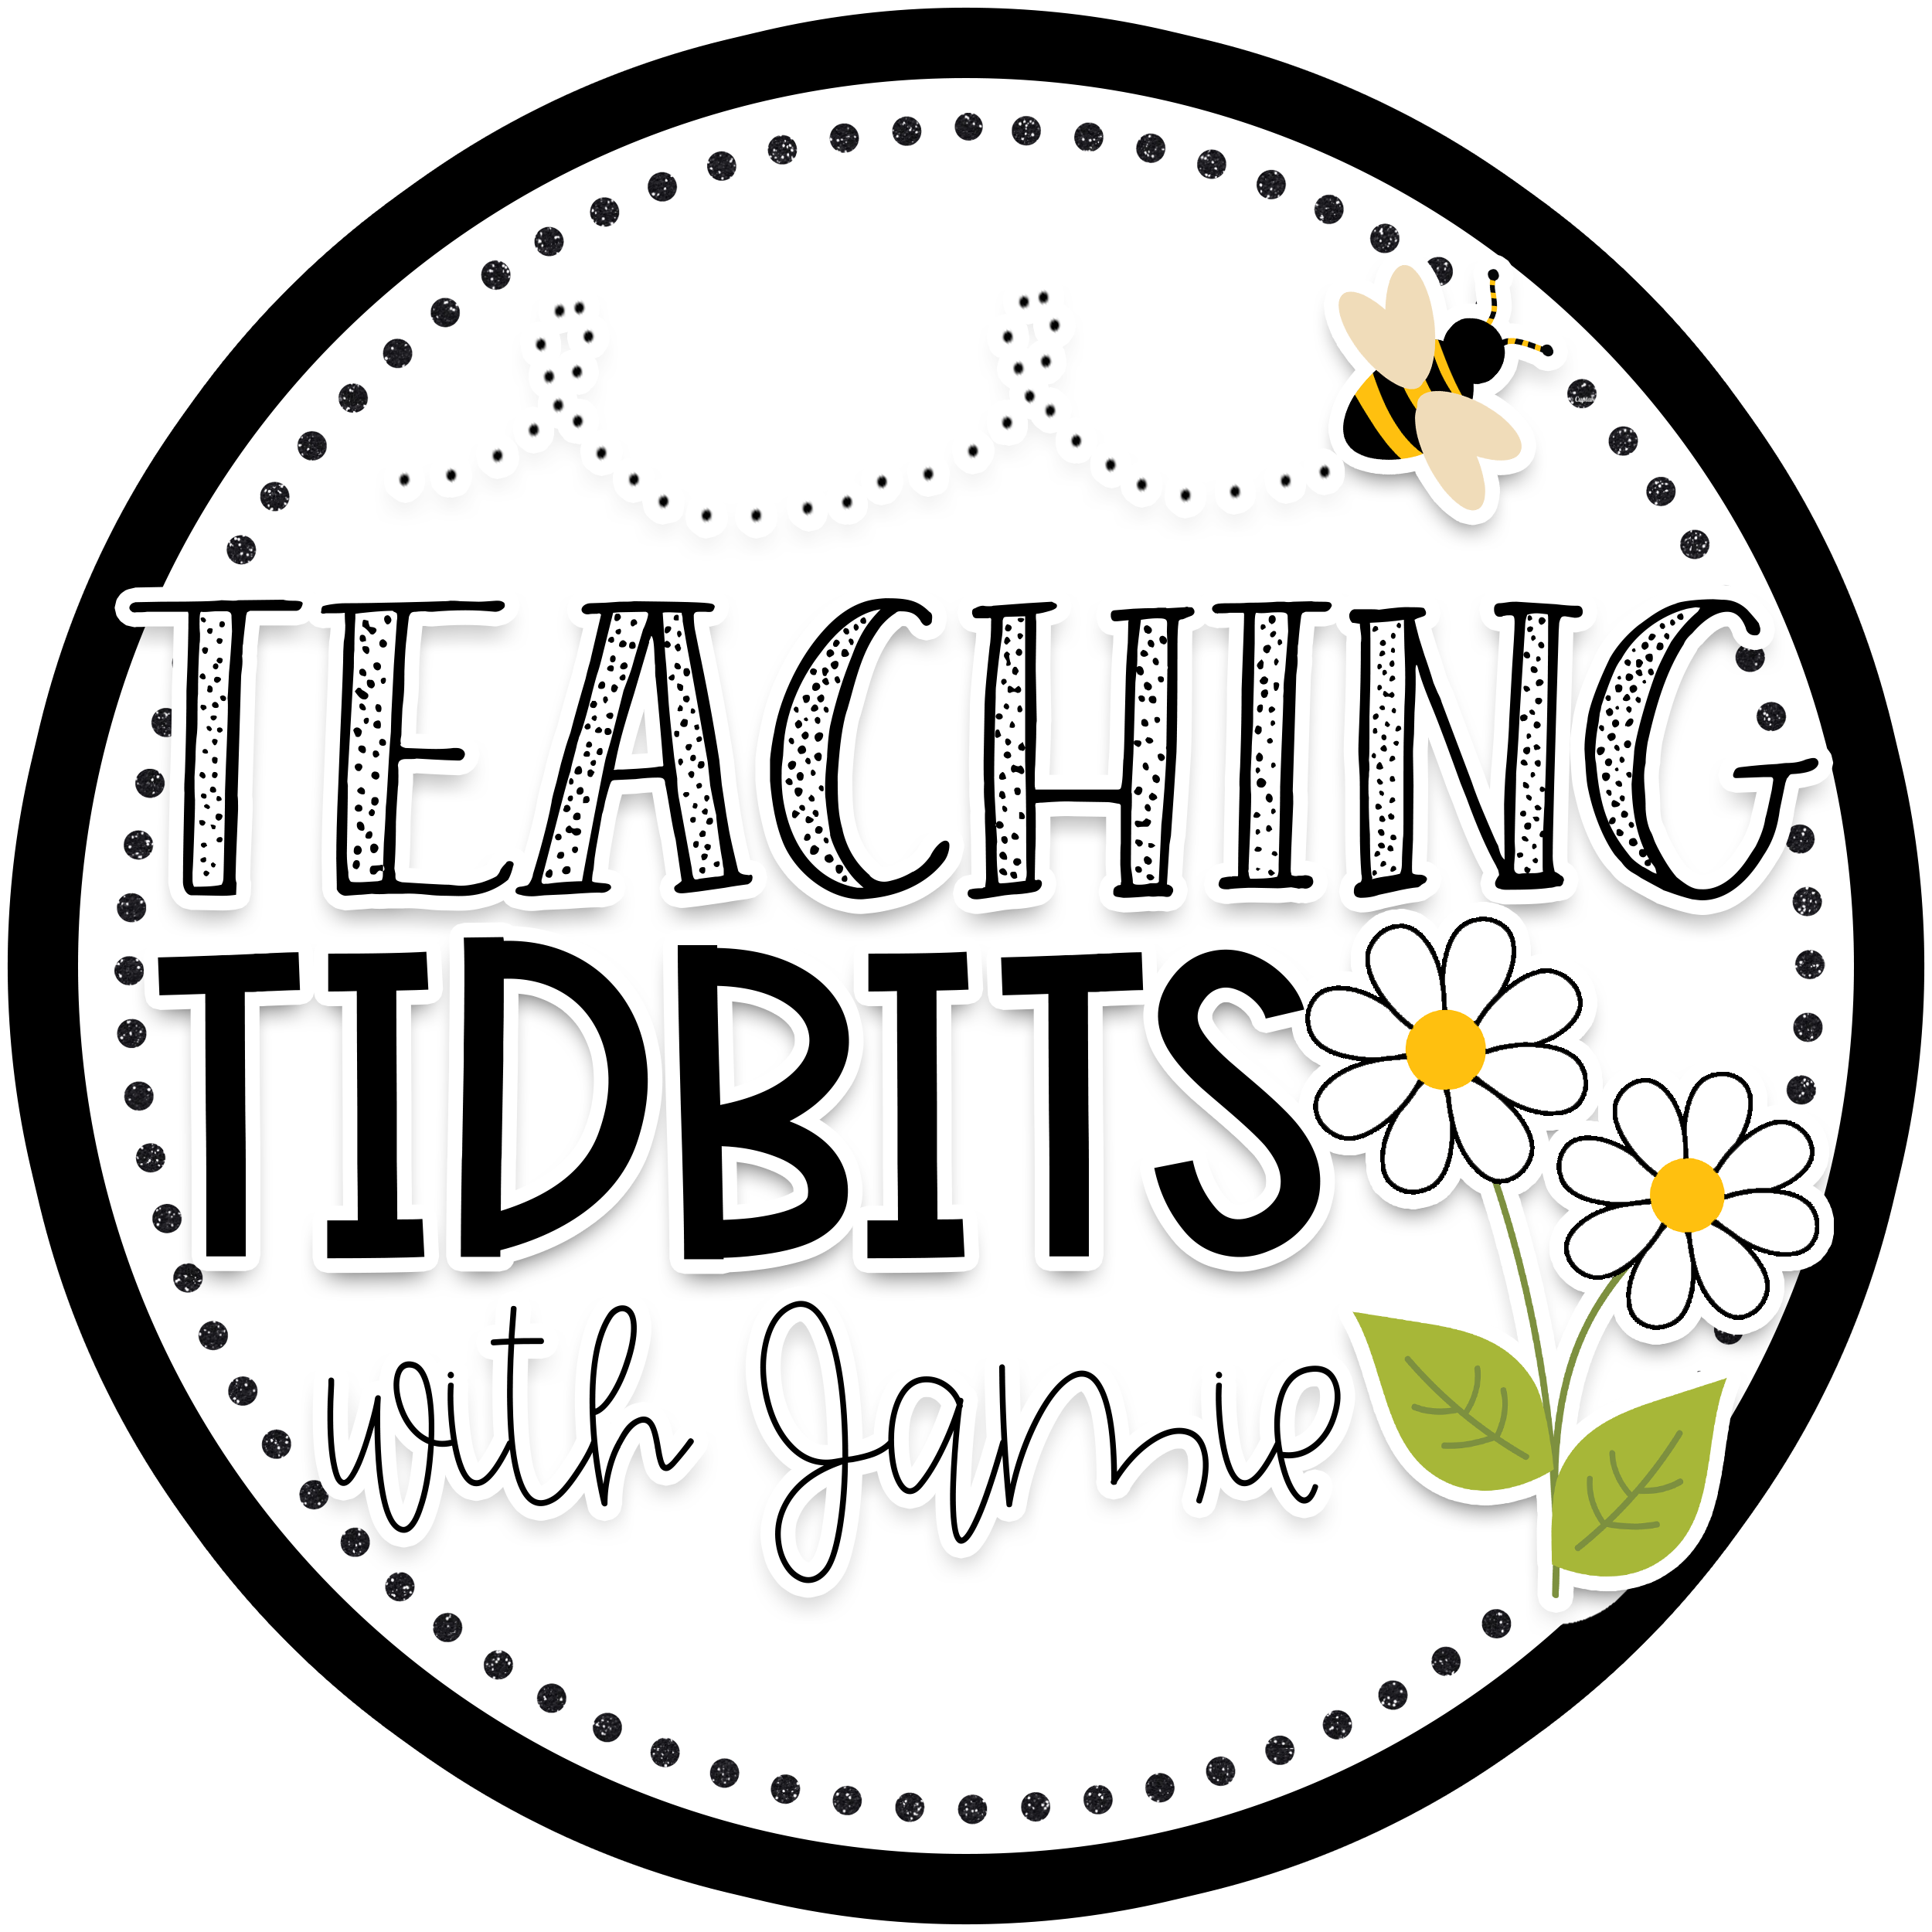 Teaching Author's Purpose - Teaching Tidbits and More